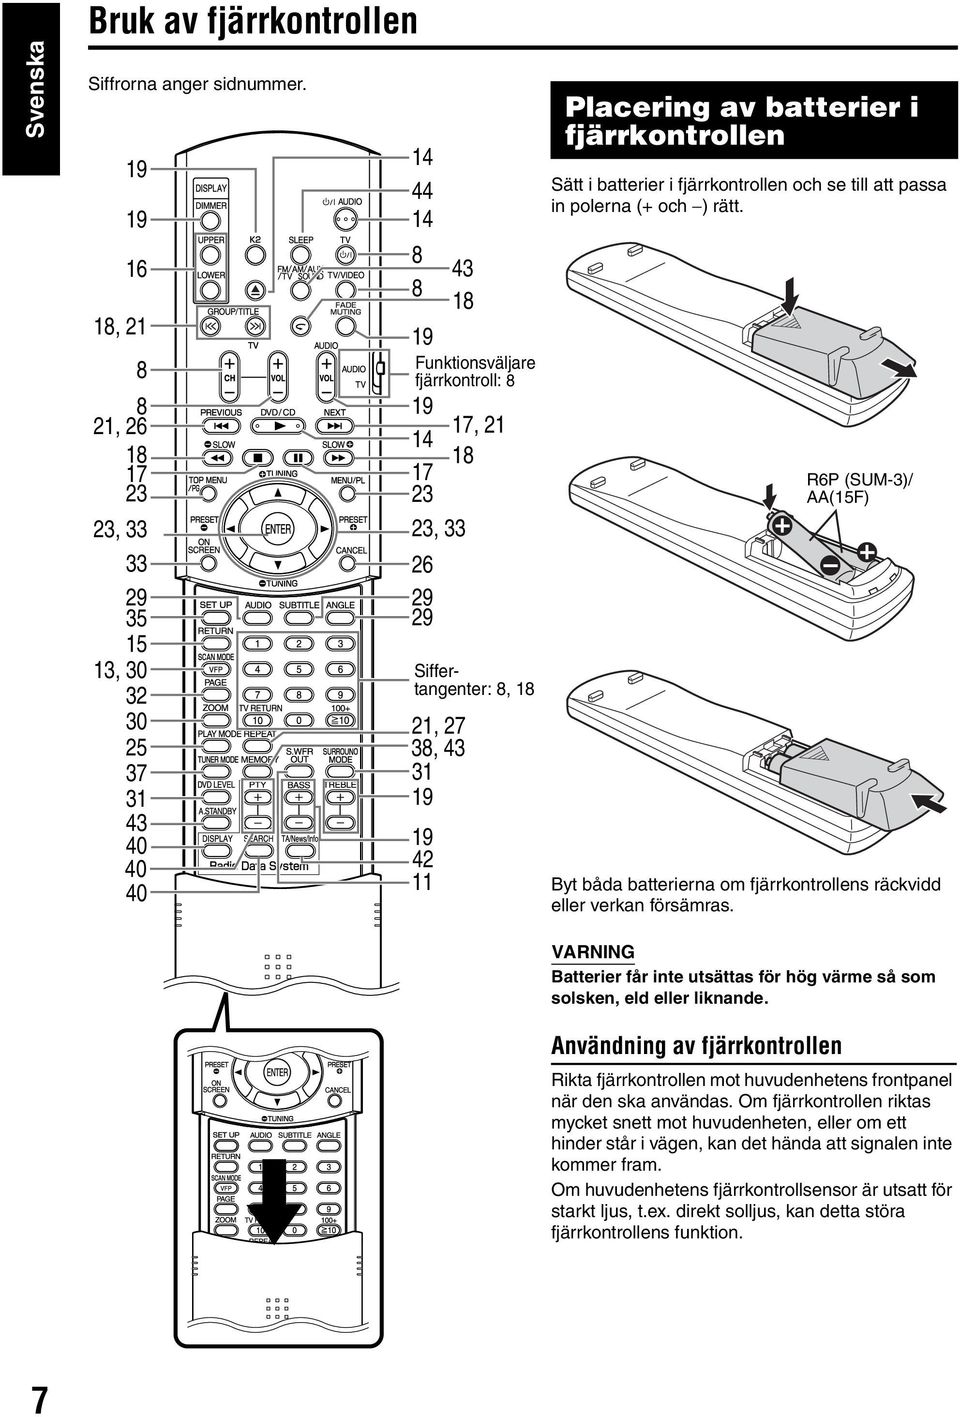 42 11 17, 21 Siffertangenter: 8, 18 Placering av batterier i fjärrkontrollen Sätt i batterier i fjärrkontrollen och se till att passa in polerna (+ och ) rätt.